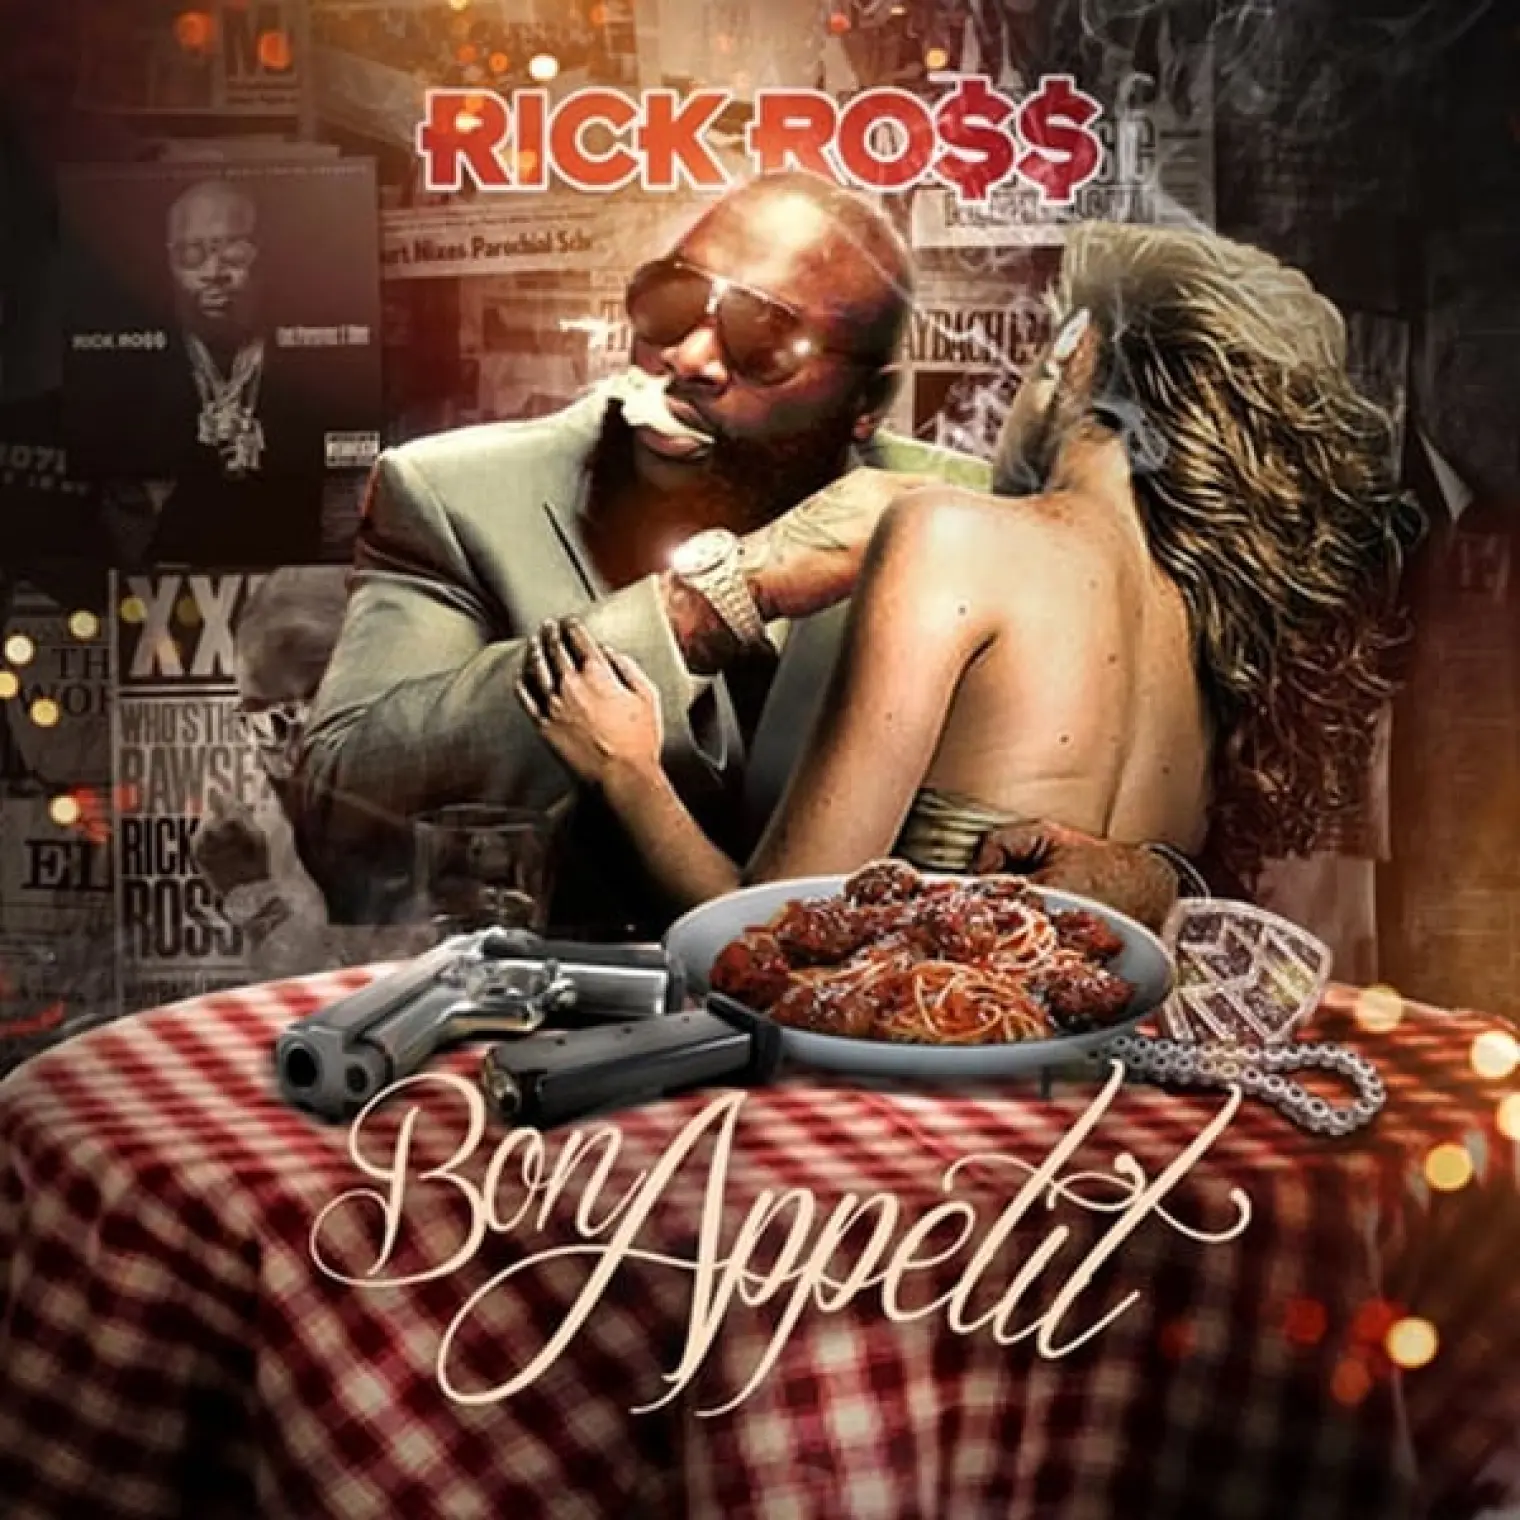 Bon appetit -  Rick Ross 